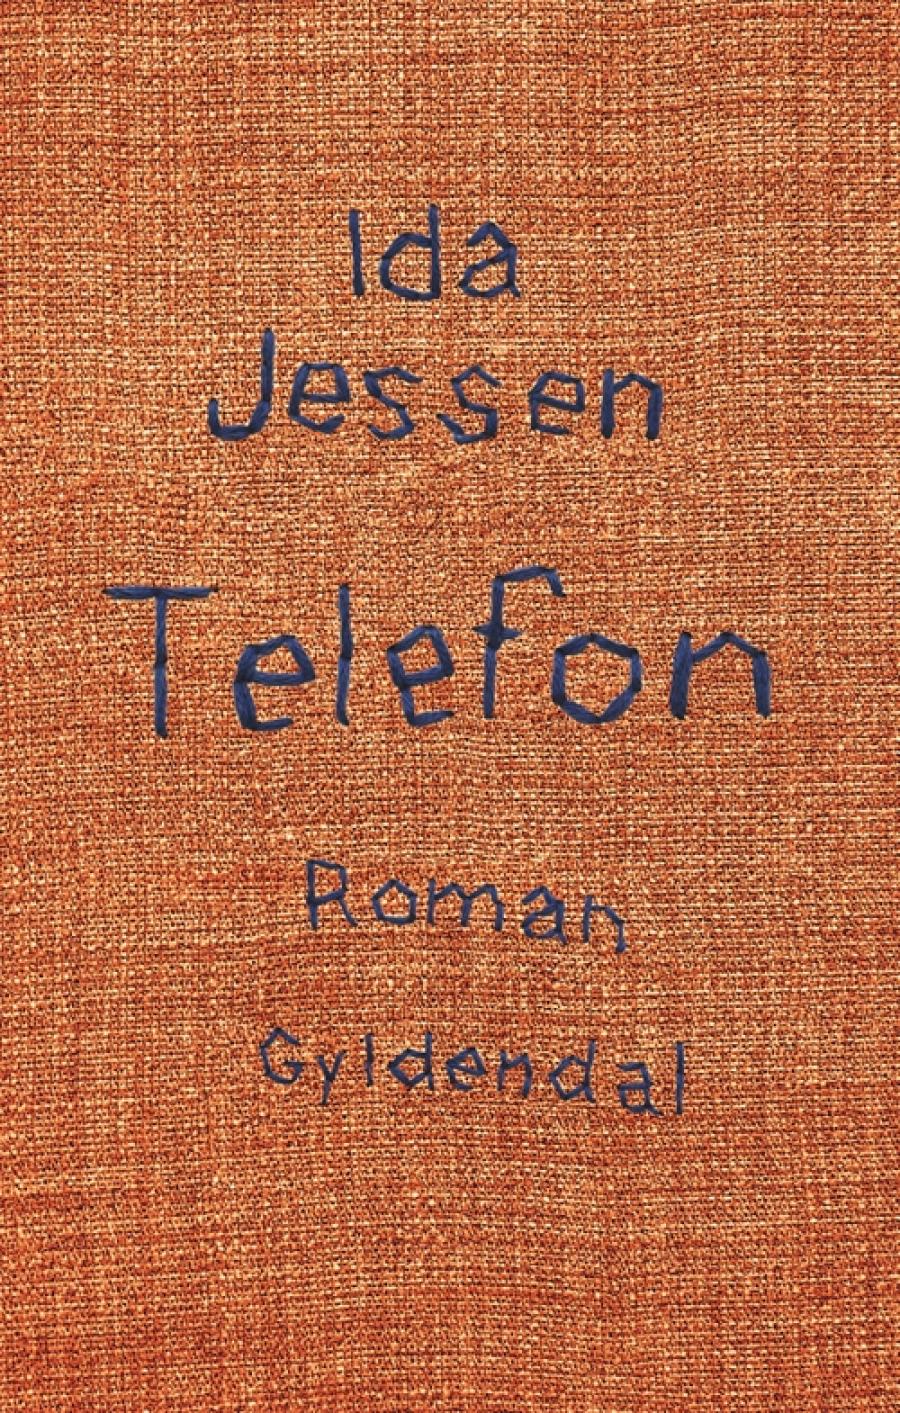 Forsiden til "Telefon" af Ida Jessen